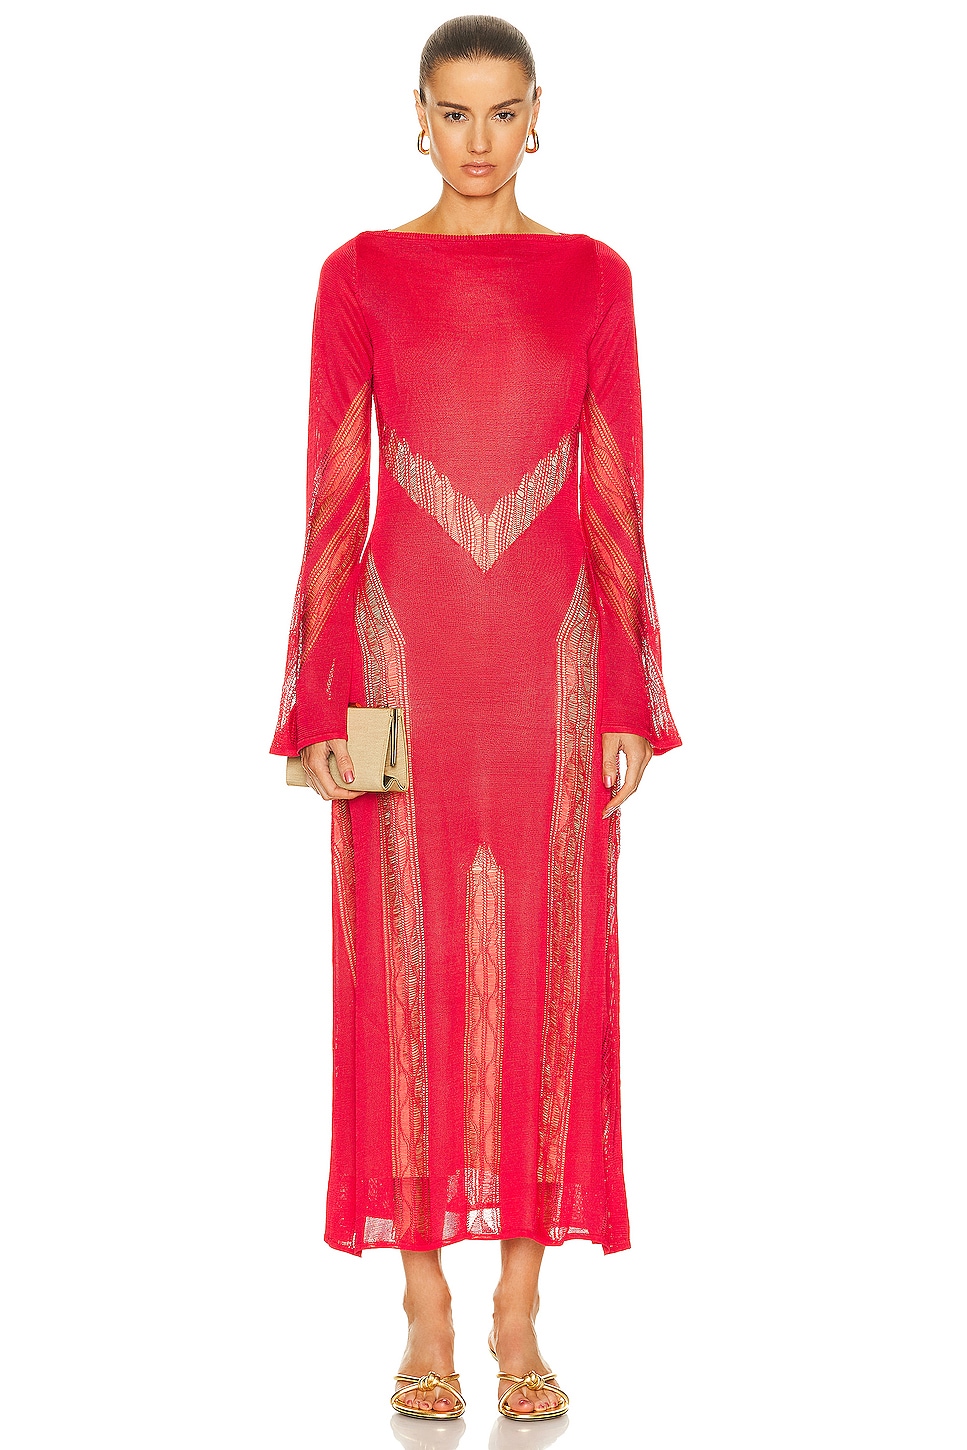 Kennon Midi Knit Dress in Red